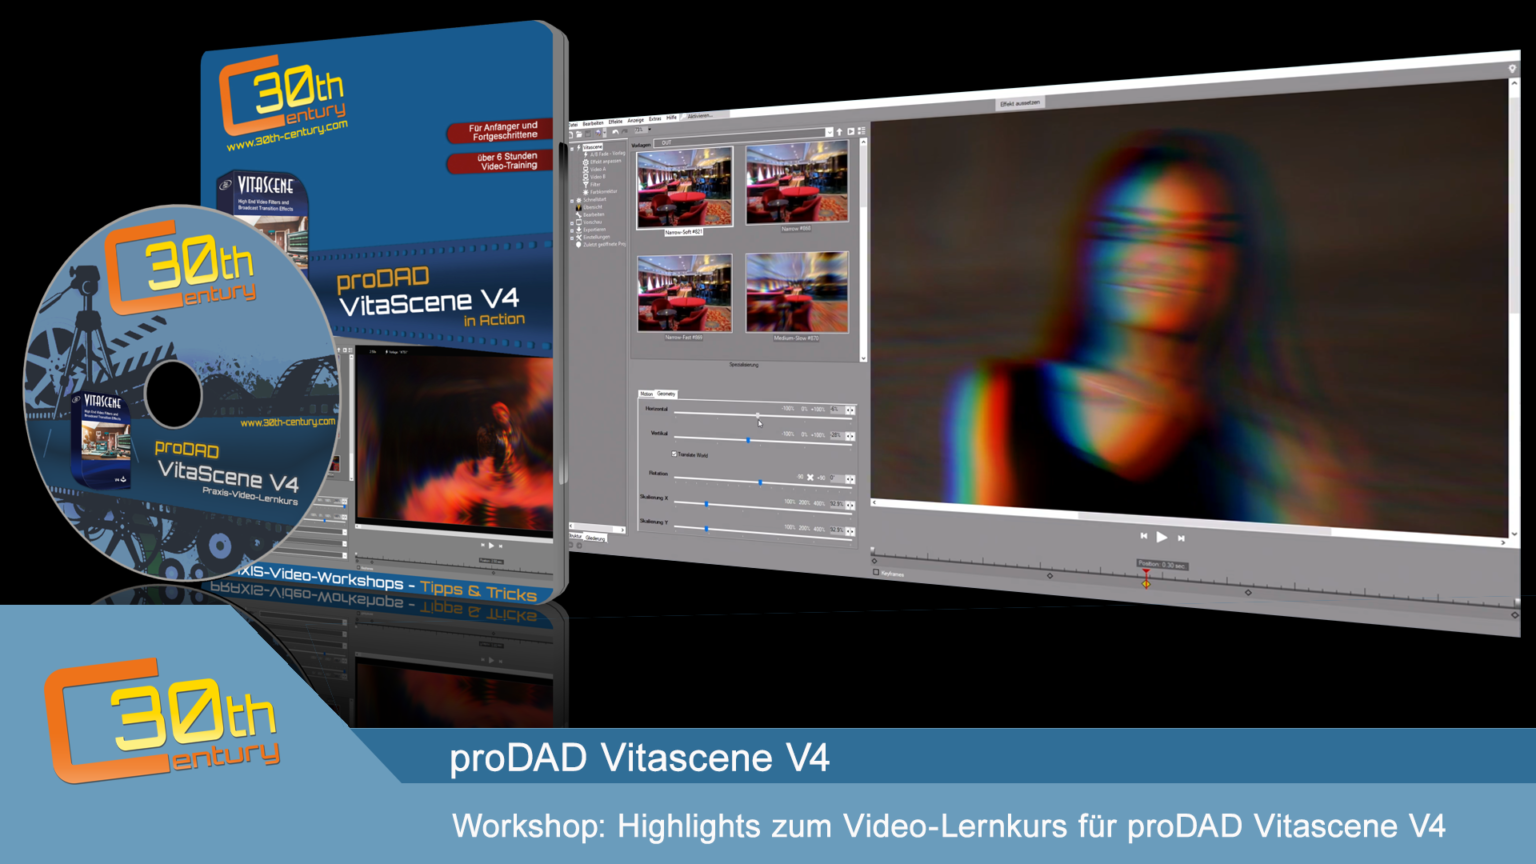 proDAD VitaScene 5.0.312 instal the new for mac